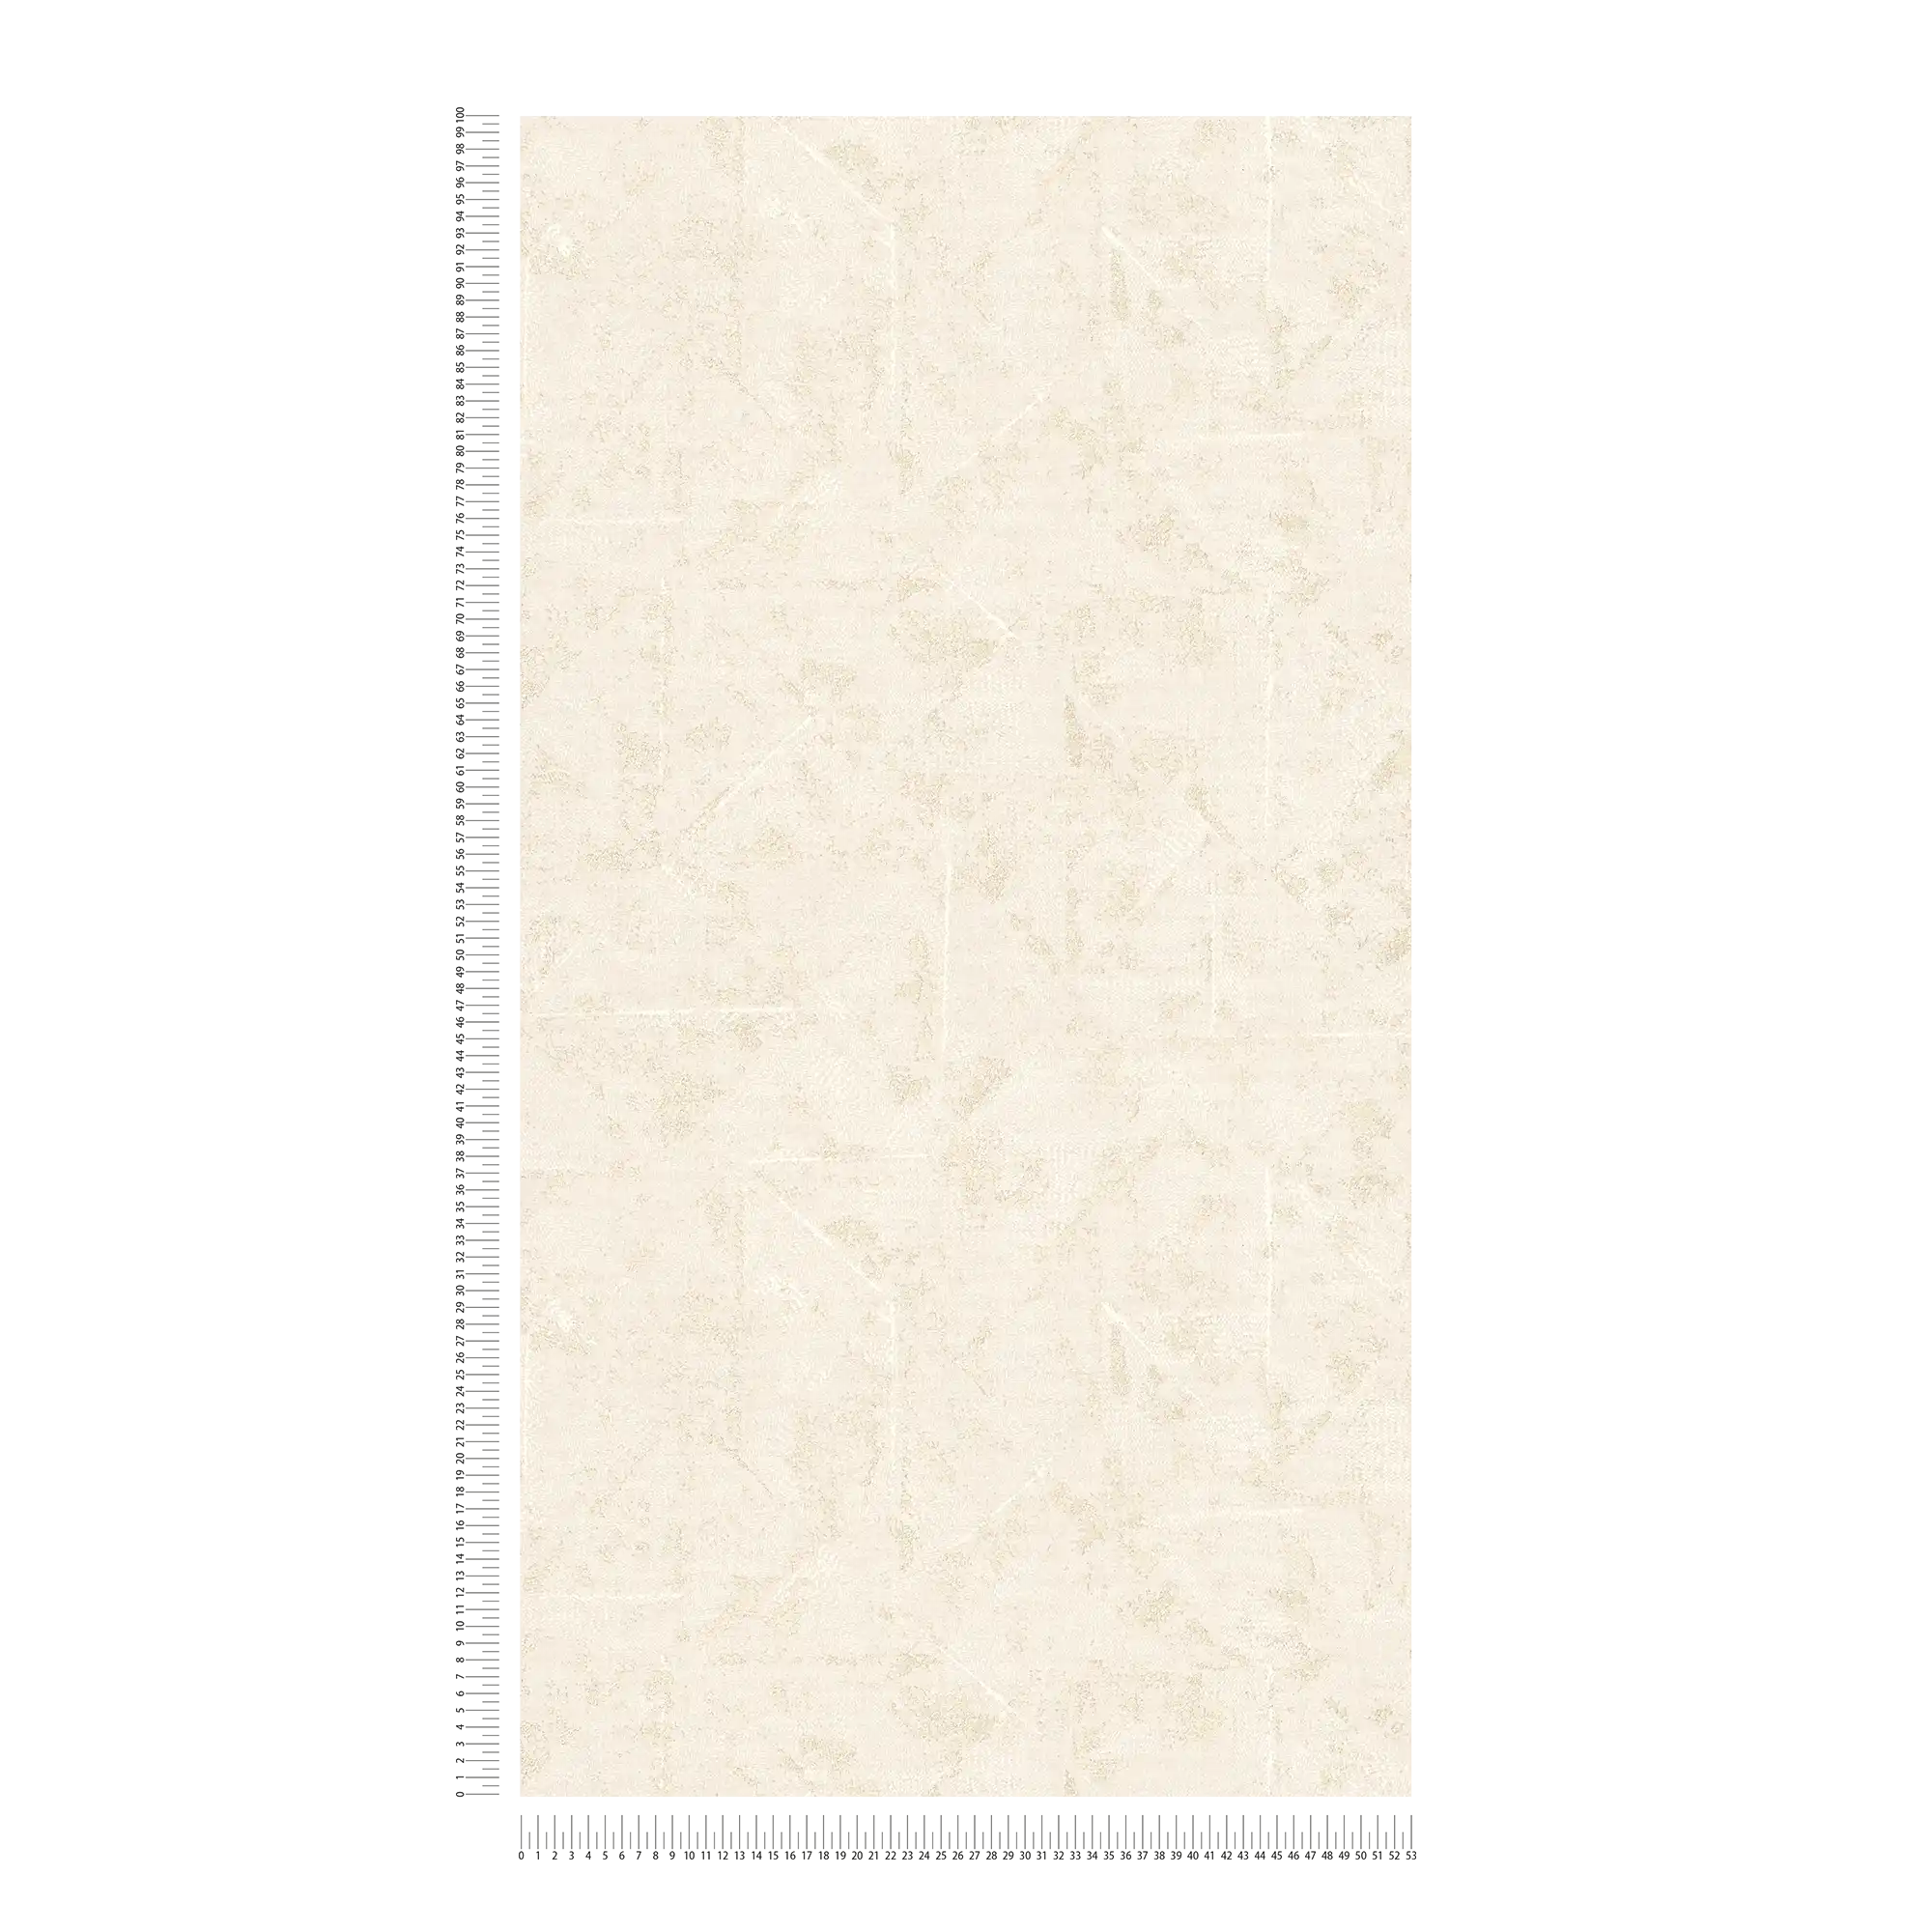             behang met asymmetrisch patroon, used look - crème, wit, goud
        